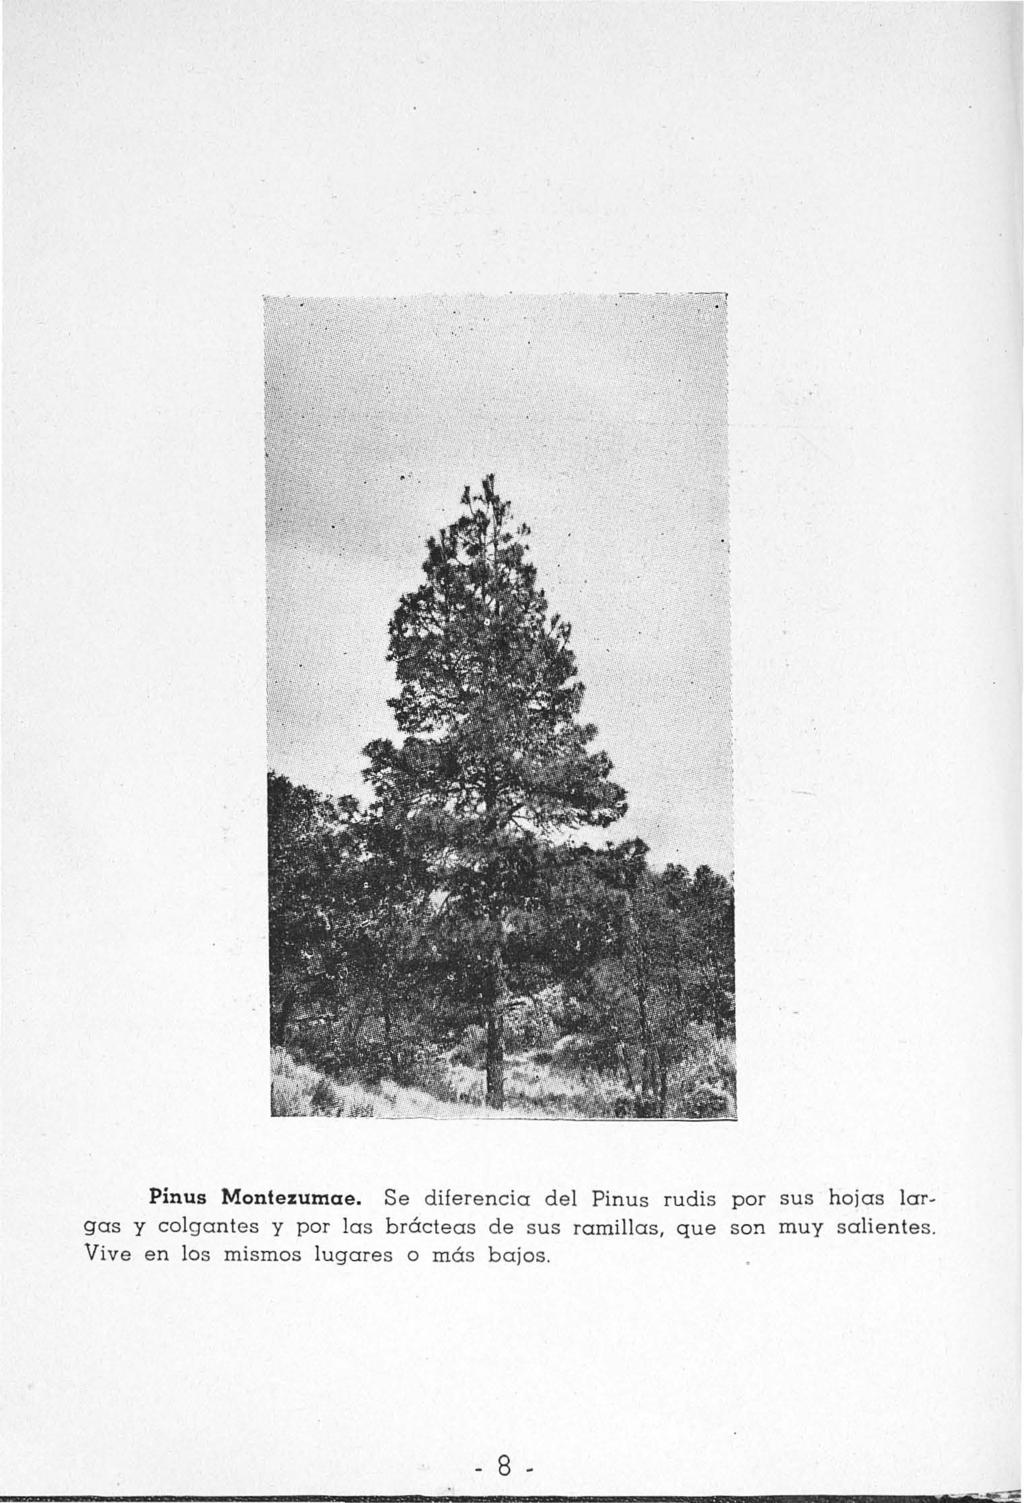 Pinus Montezumae.